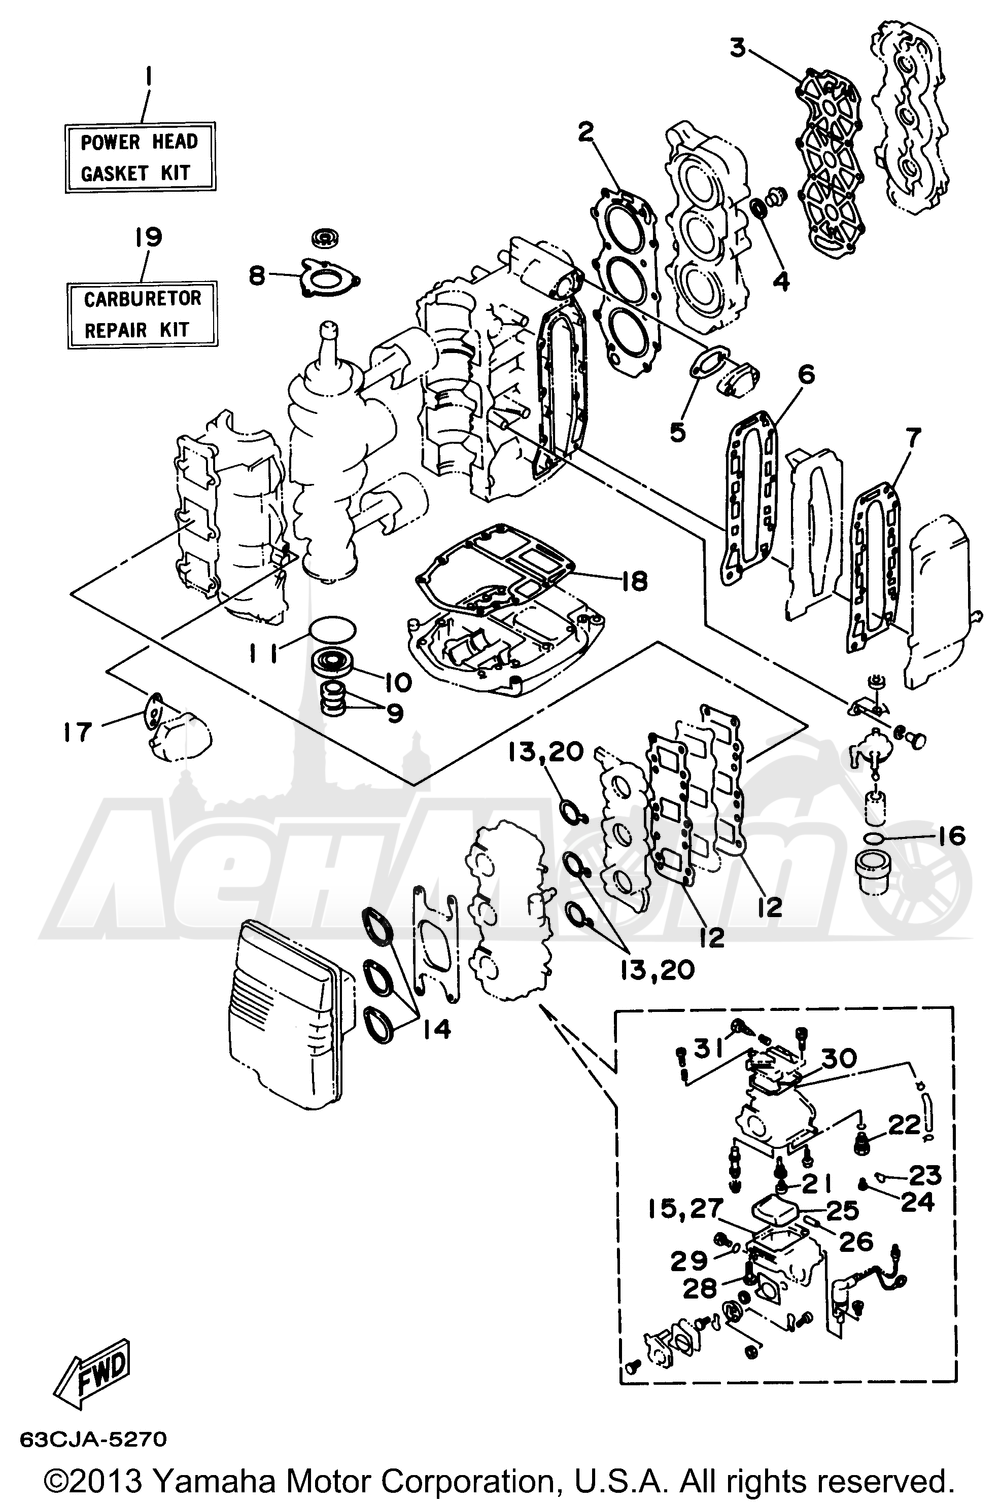 Запчасти для Лодочного мотора Yamaha 1997 40TLRV/50TLHV/40MLHV/40MSHV/50EJRV/40TLHV/40EJRV/50ELRV/50TLRV/40ELRV/40MJHV/40ESRV Раздел: REPAIR KIT 1 | ремкомплект 1